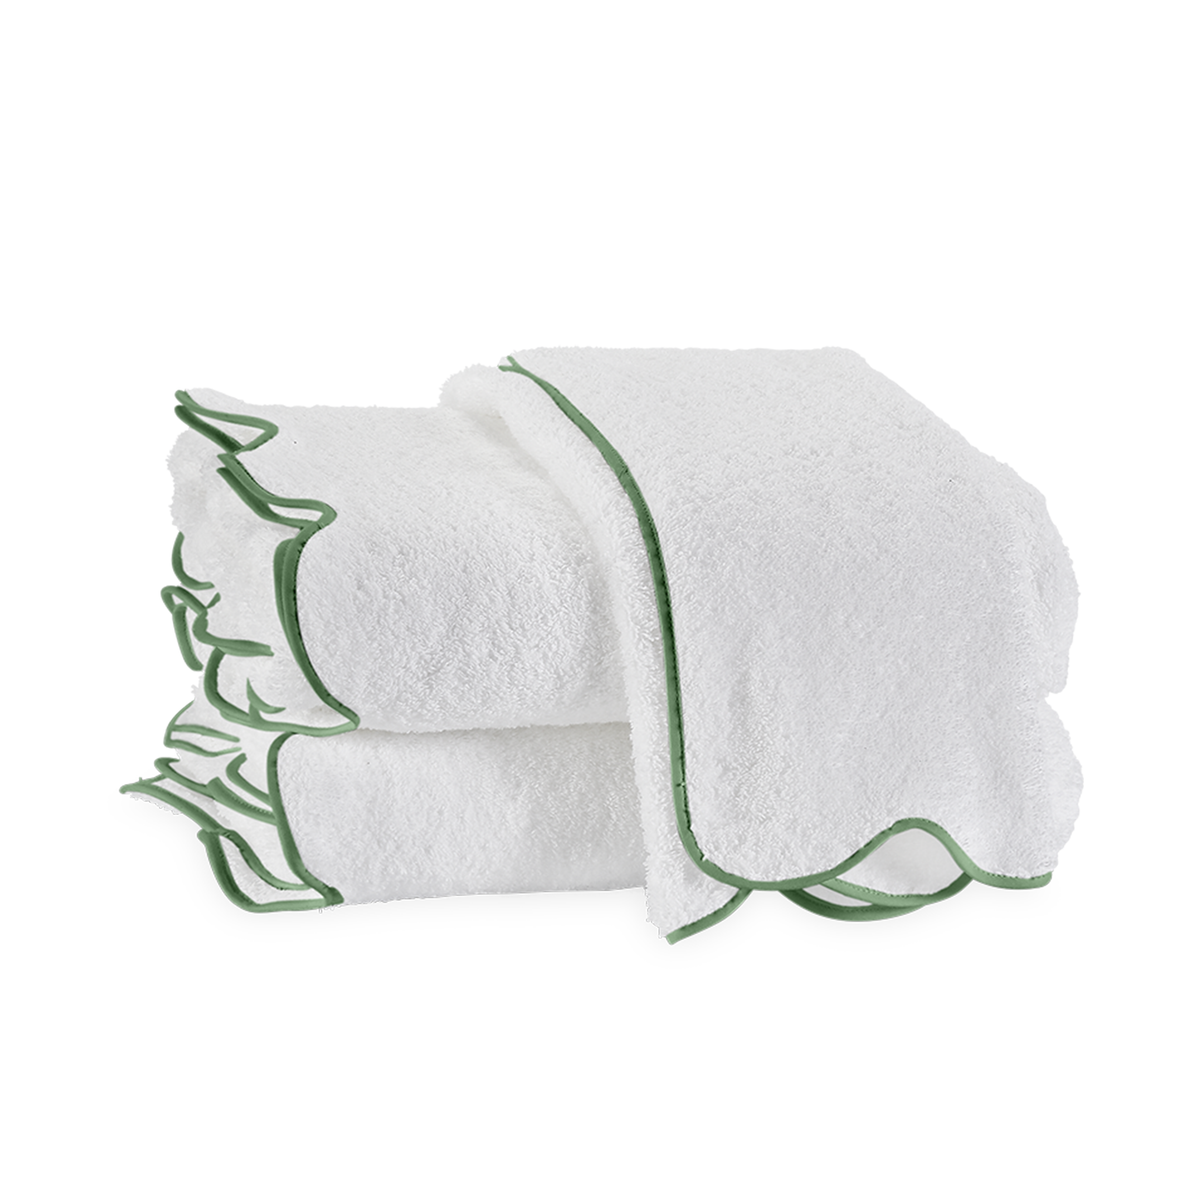 Silo Image of Matouk Cairo Scallop Bath Towels in Color Palm